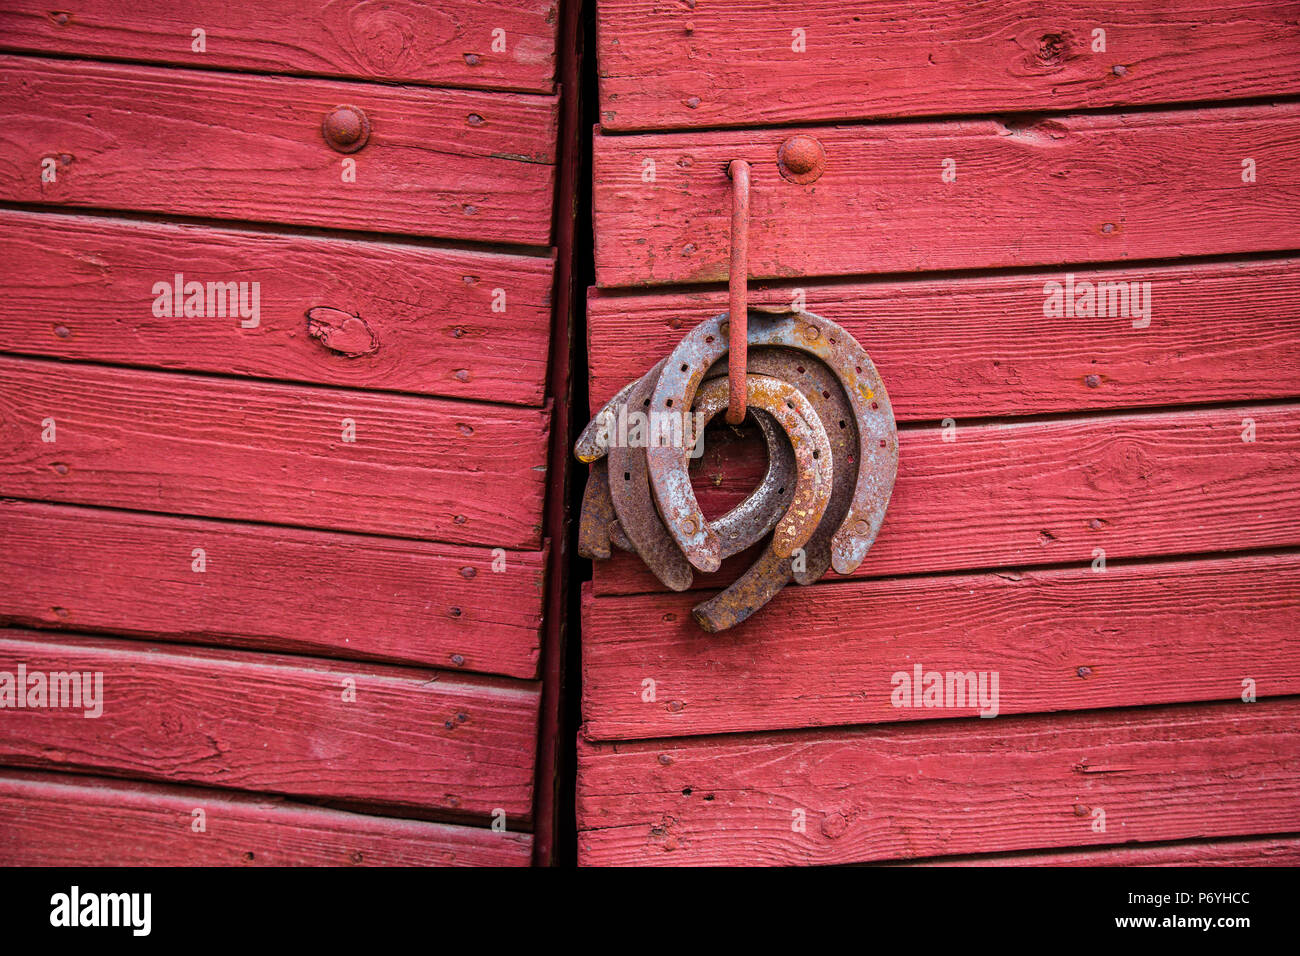 Old rusty fers accroché sur la poignée de porte en bois rouge Banque D'Images